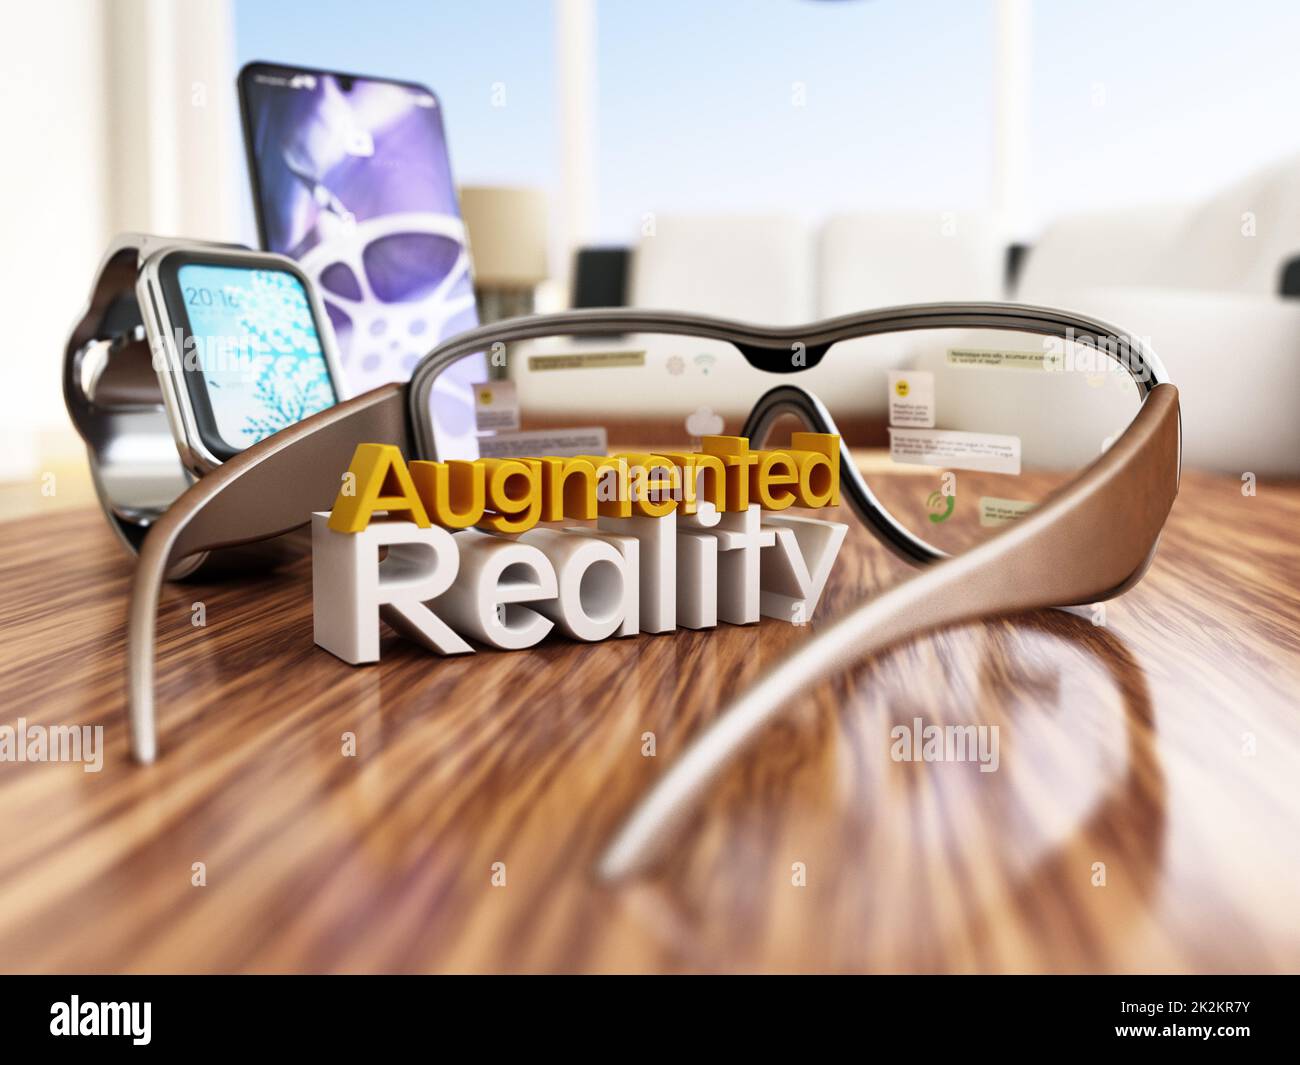 Occhiali per realtà aumentata, smartphone e smartwatch su un tavolo in legno. Illustrazione 3D Foto Stock